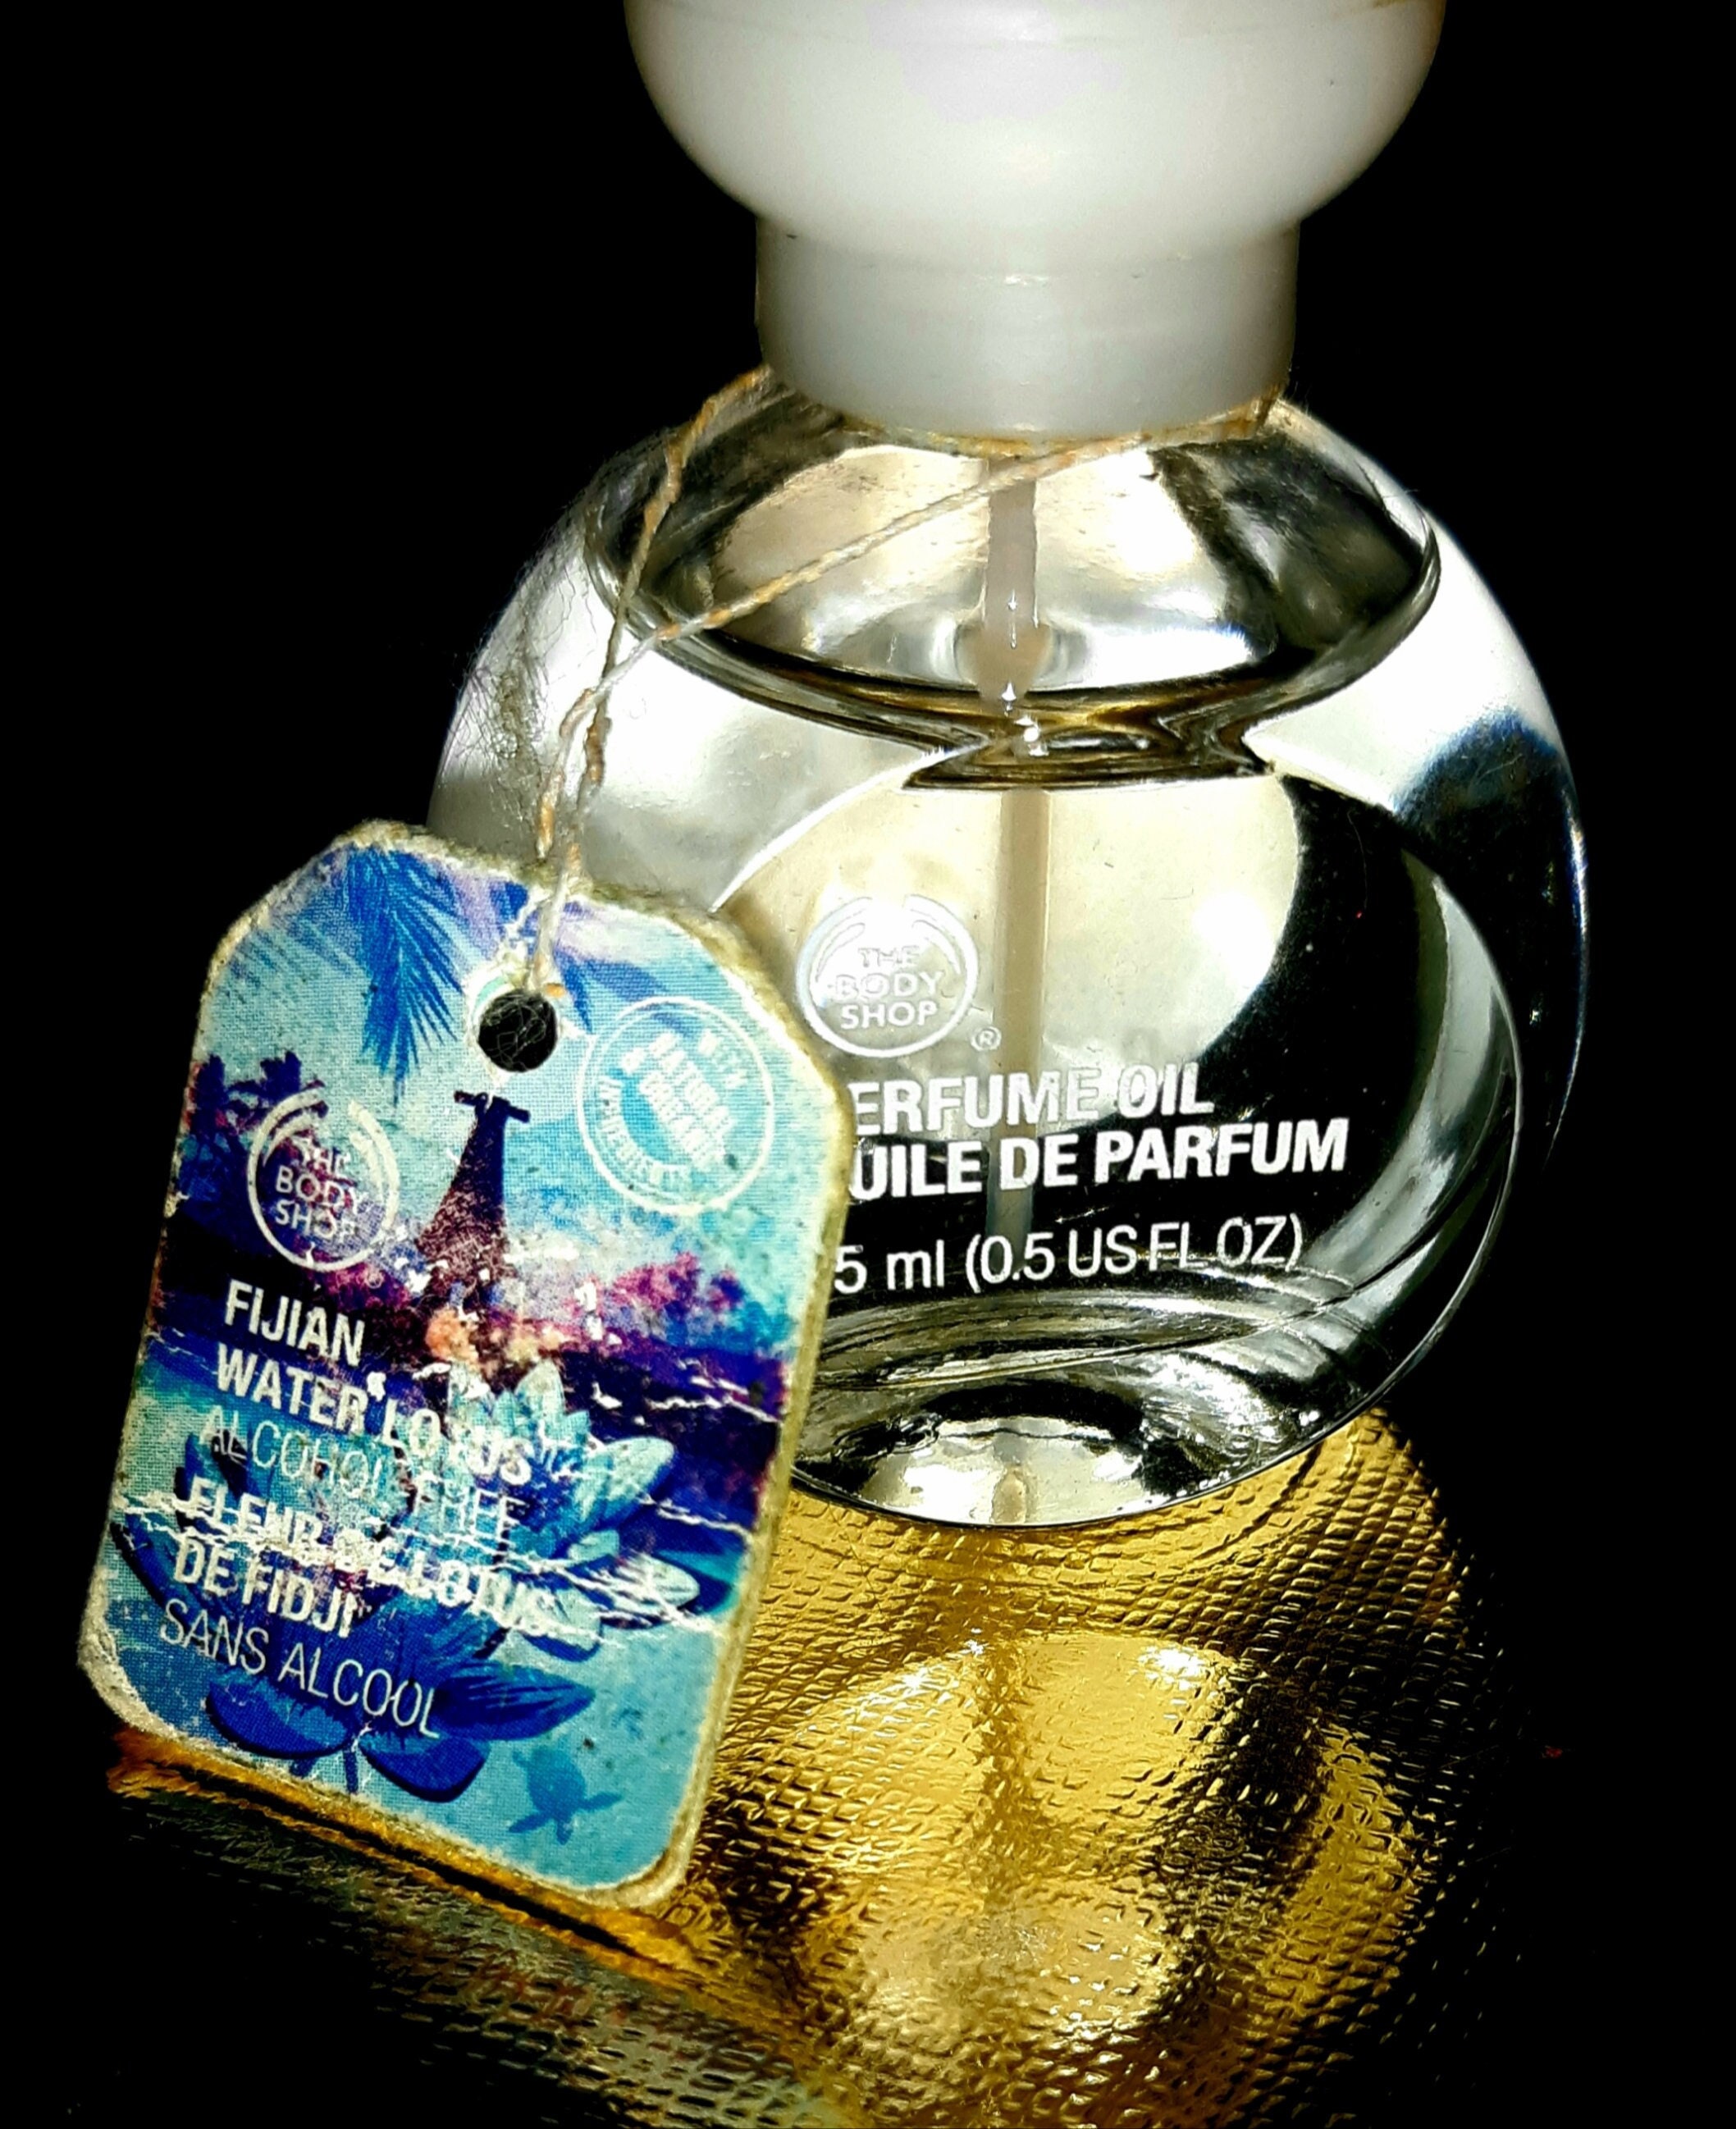 lekkage Memo wedstrijd Buy The Body Shop Fijian Water Lotus Perfume Oil 0.5 FL OZ 15 Ml Online in  India - Etsy